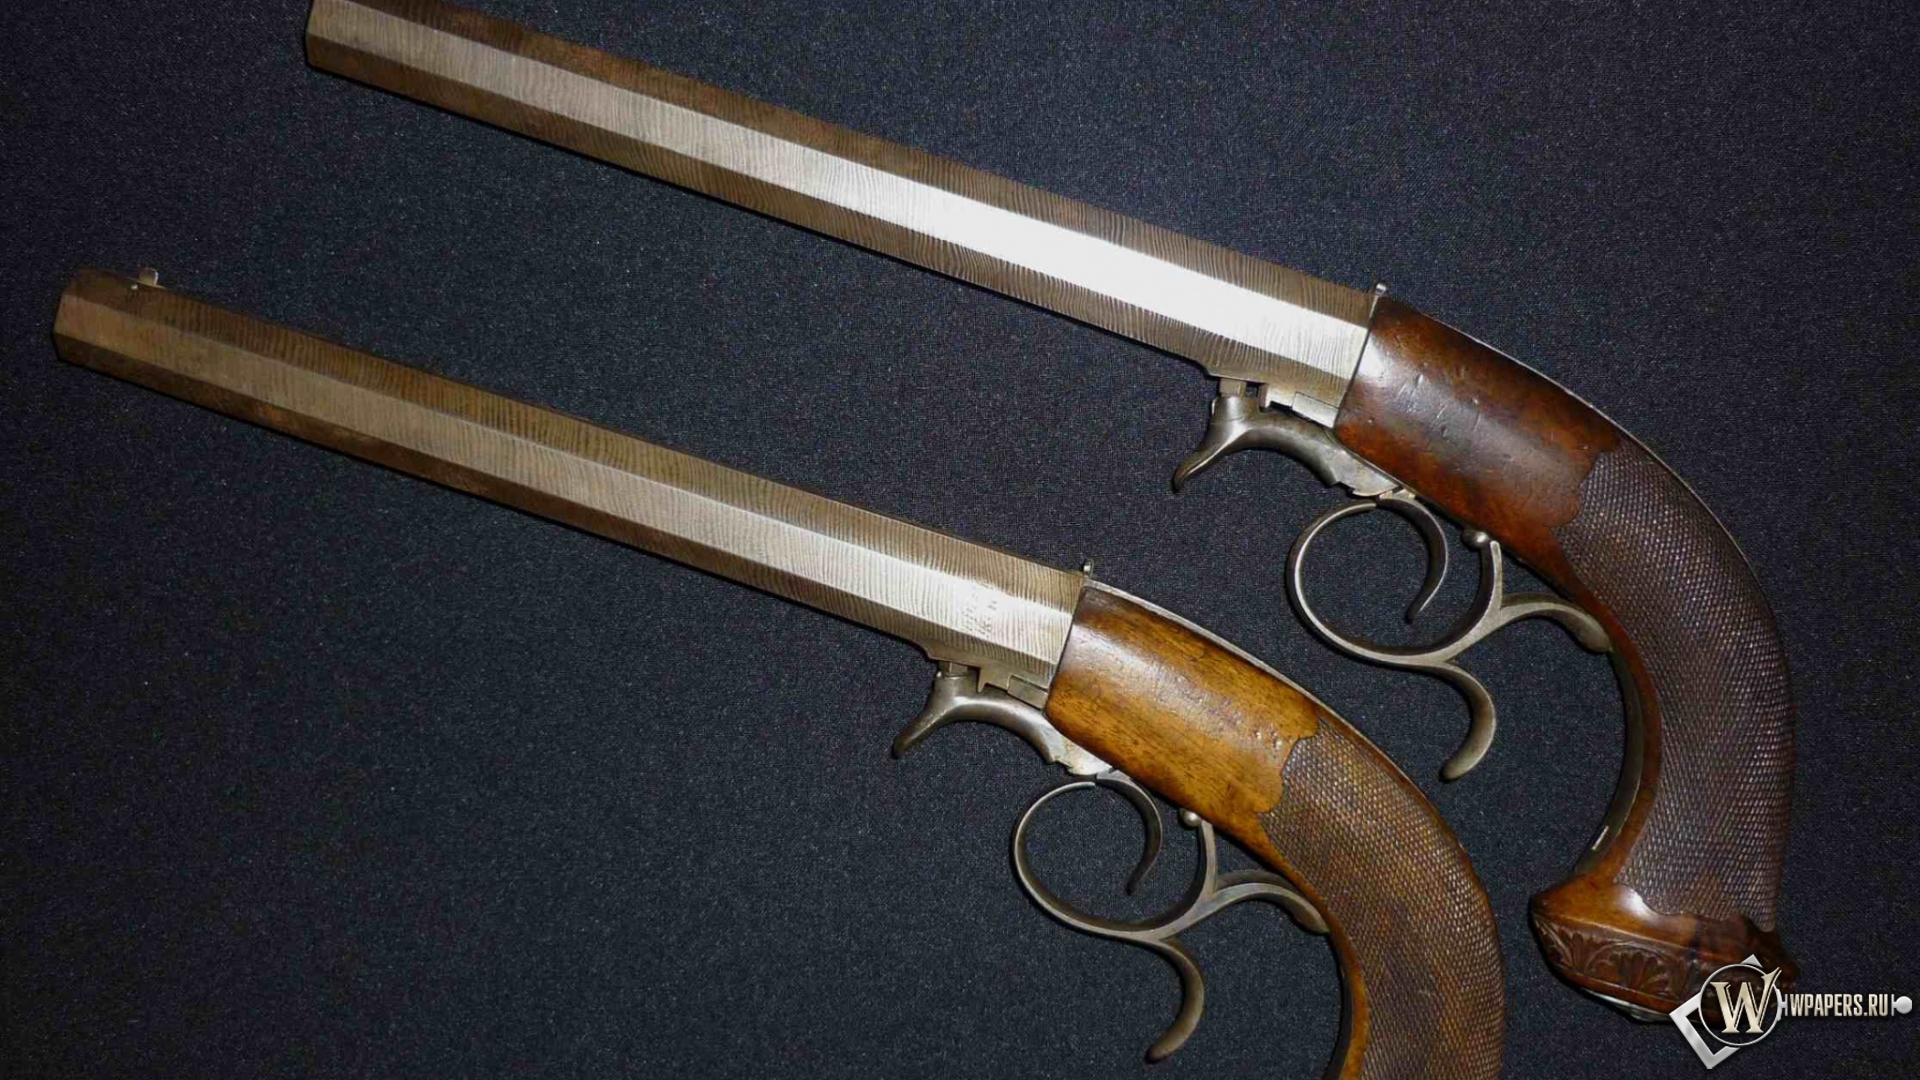 Дуэльные пистолеты 40-50 годы XIX века 1920x1080